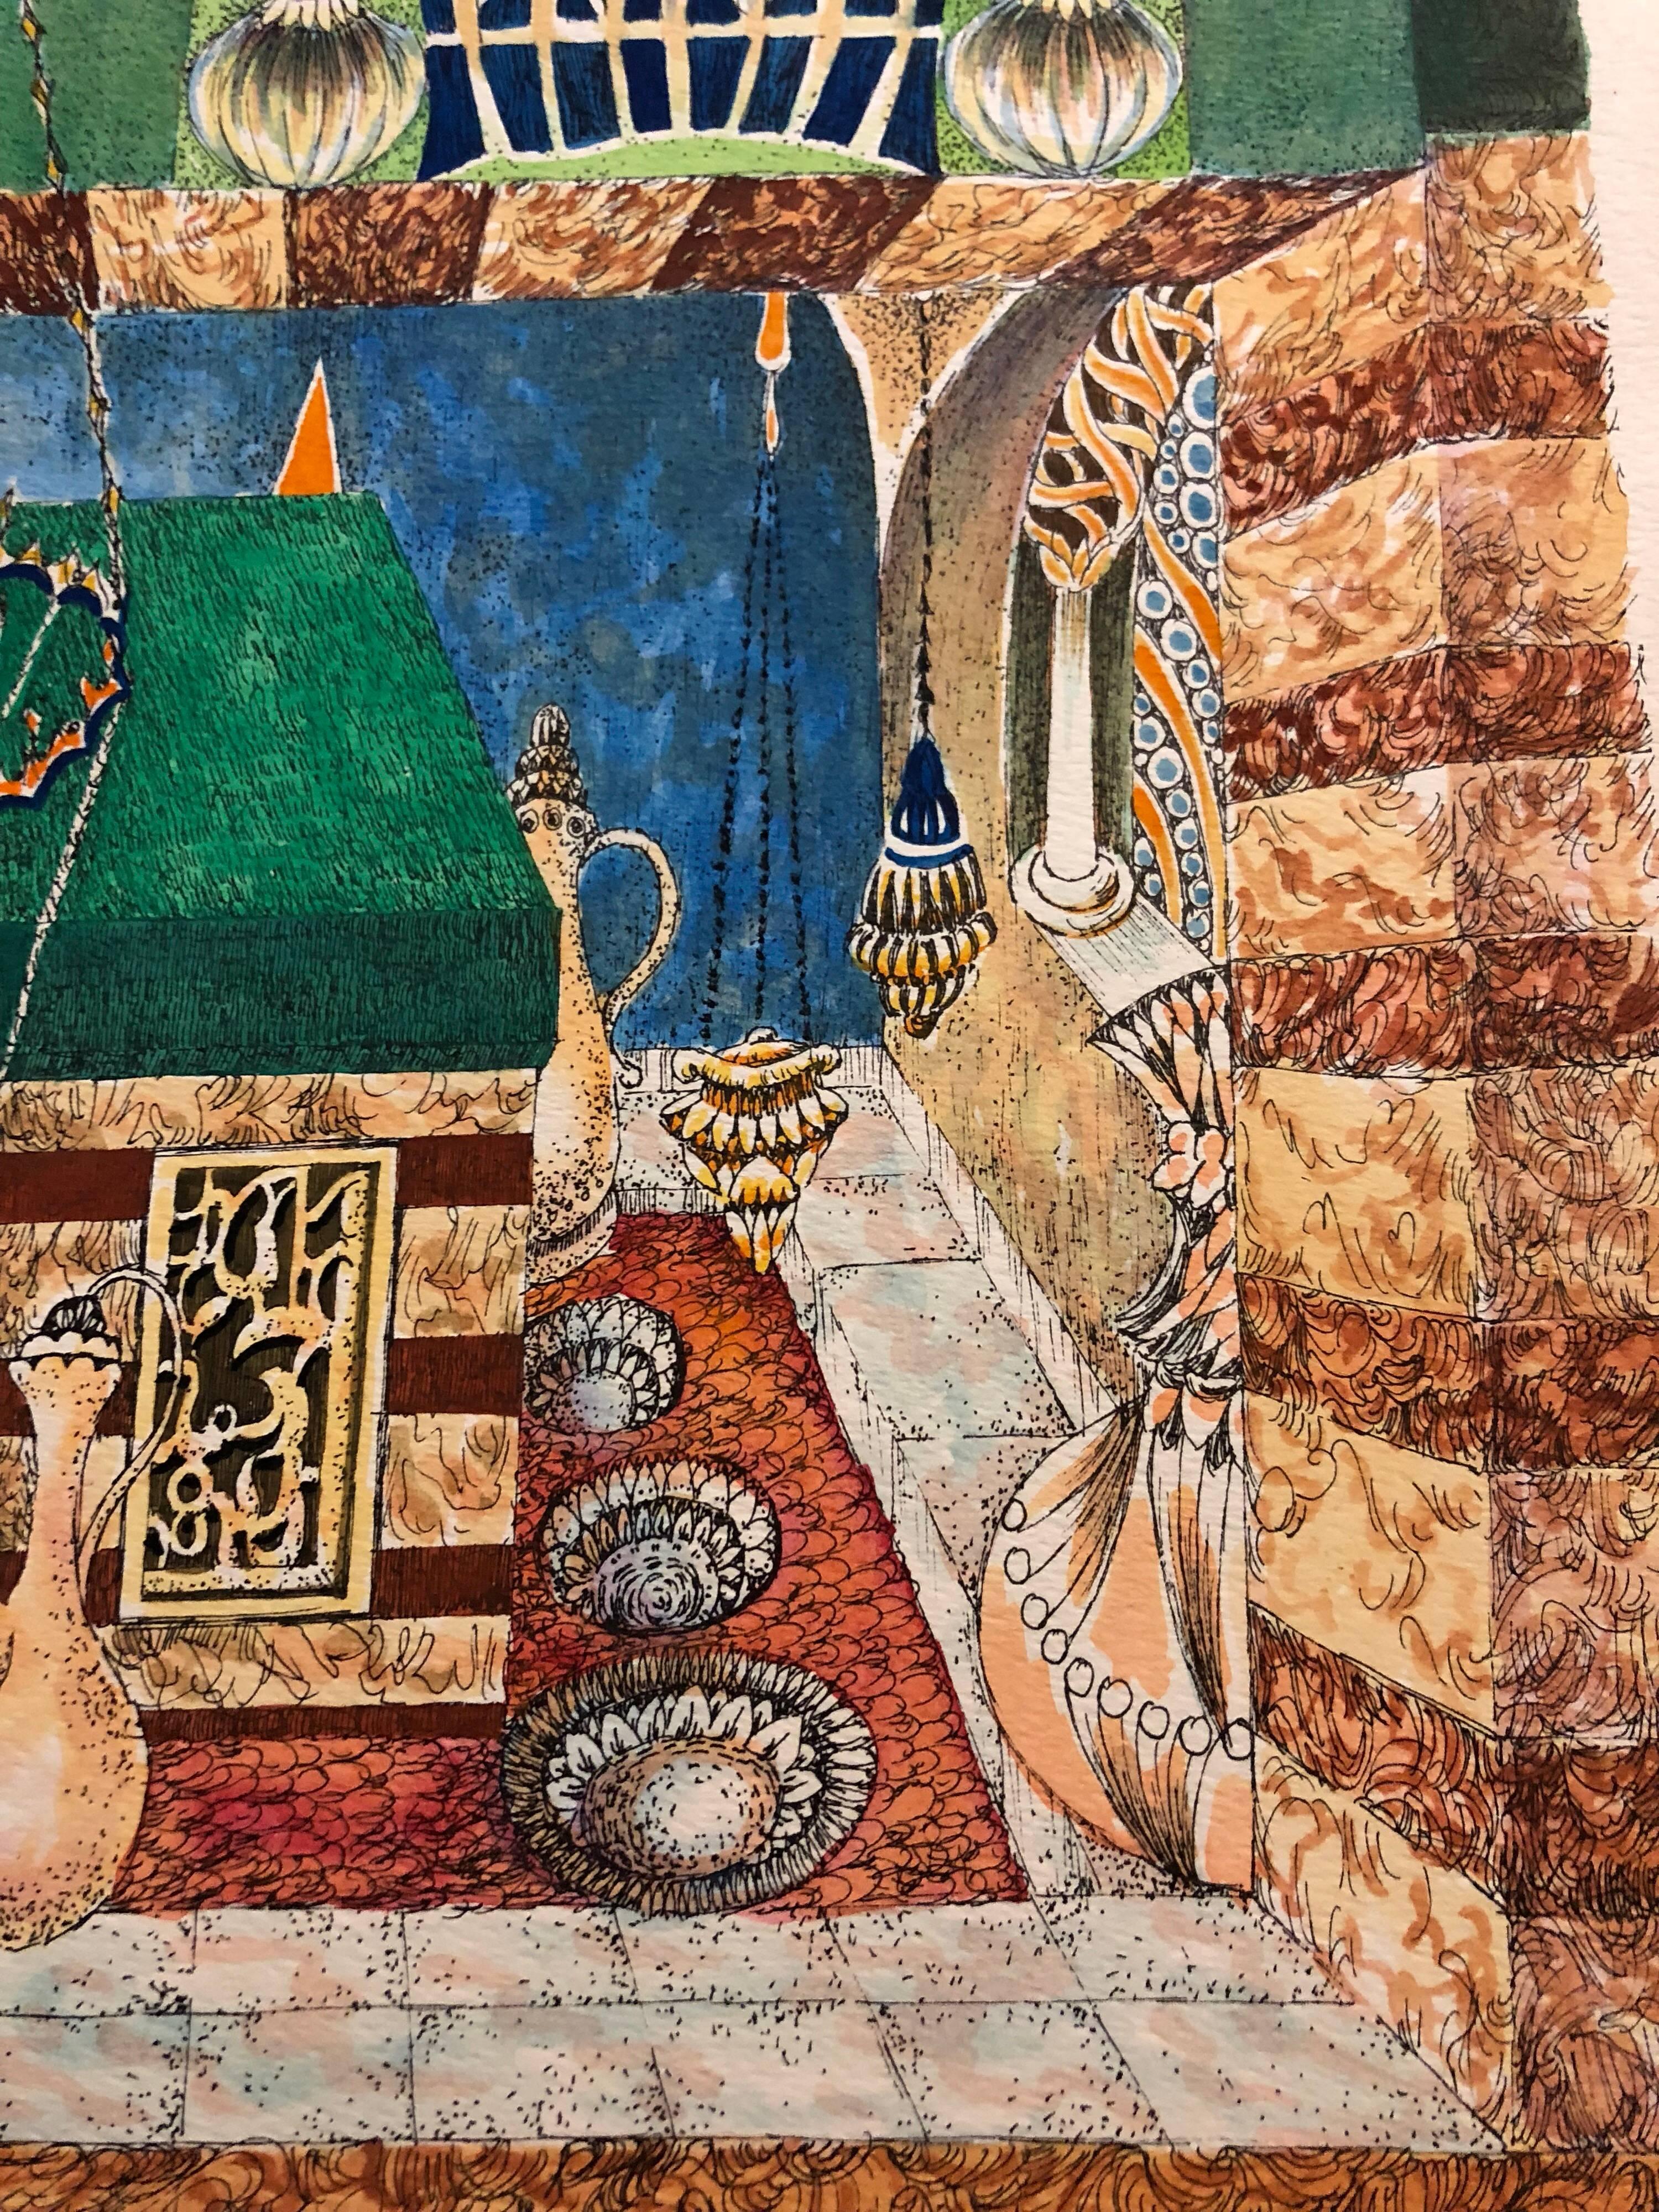 Baruch Nachshon est né en Palestine mandataire en 1939, dans la ville de Haïfa.
Nachshon a commencé à peindre dans sa petite enfance, et a développé sa relation à l'art et aux artistes tout au long de sa jeunesse. Pendant son service militaire,